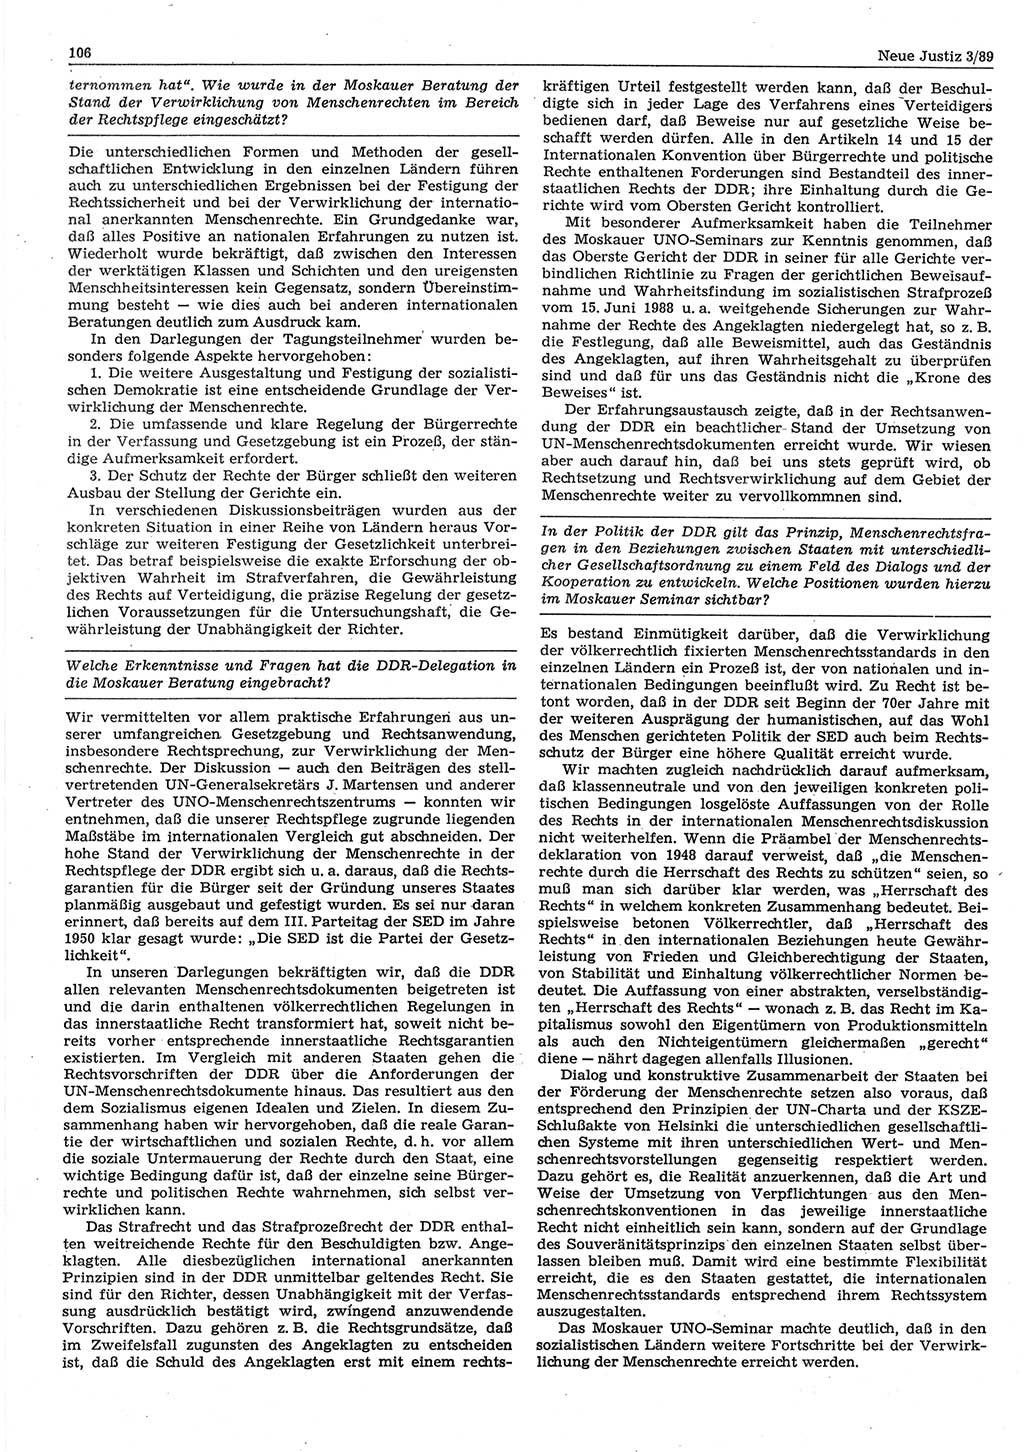 Neue Justiz (NJ), Zeitschrift für sozialistisches Recht und Gesetzlichkeit [Deutsche Demokratische Republik (DDR)], 43. Jahrgang 1989, Seite 106 (NJ DDR 1989, S. 106)